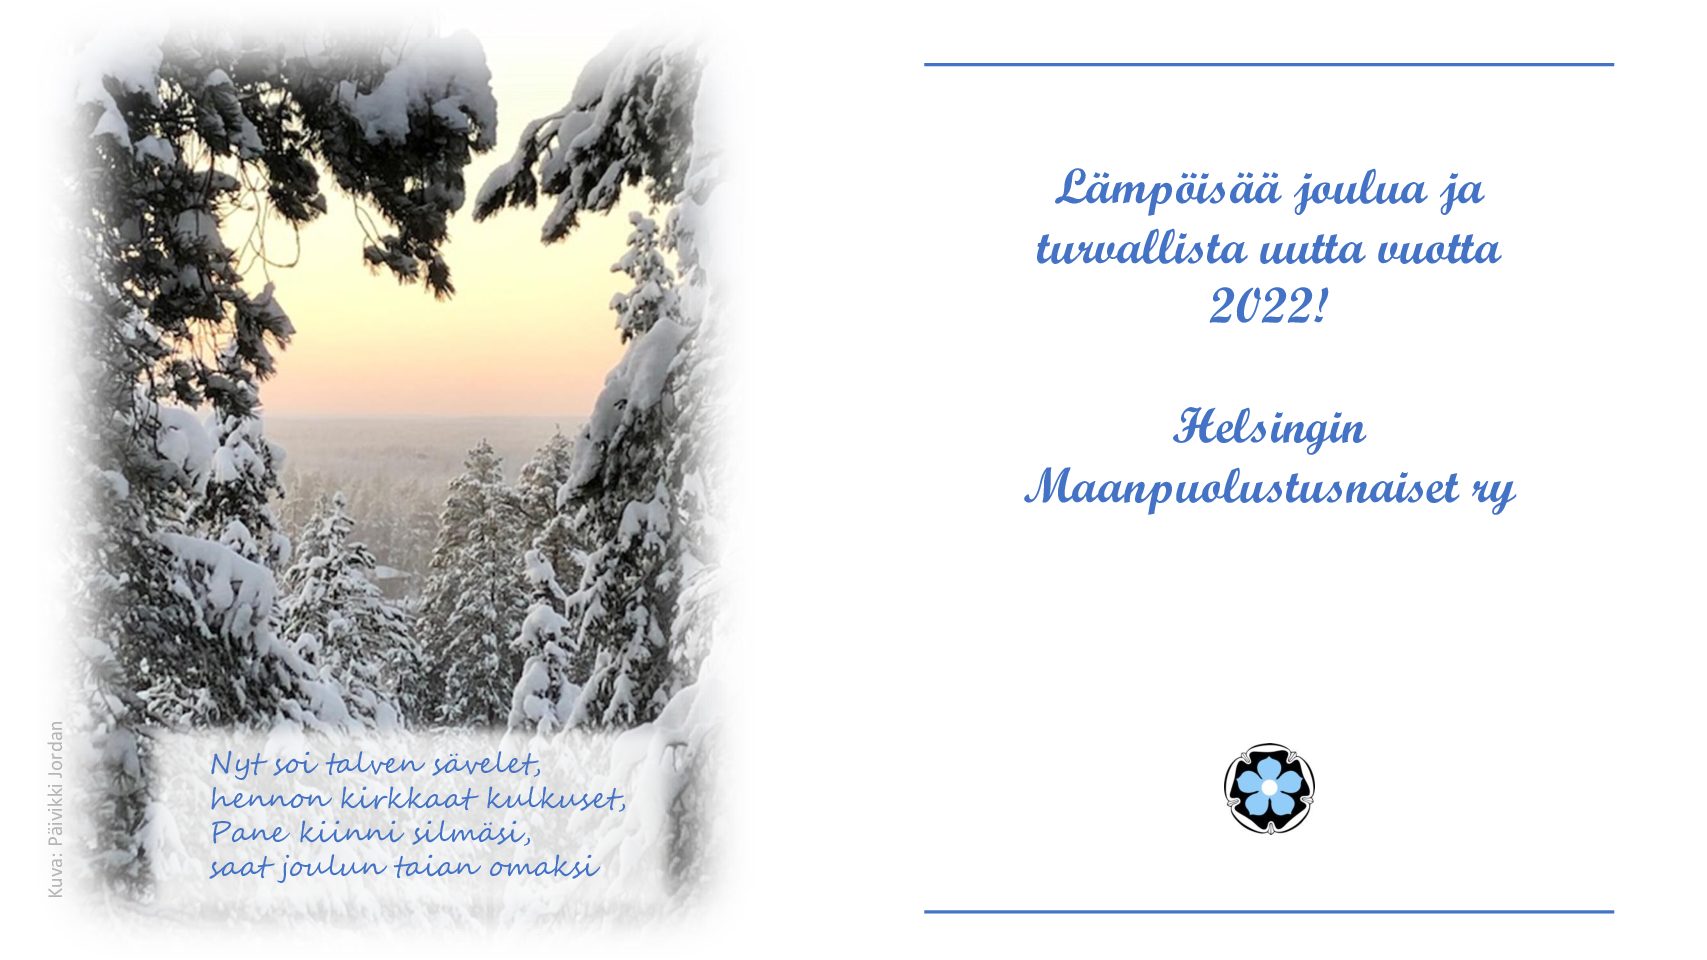 Lämpöisää joulua ja turvallista uutta vuotta 2022!